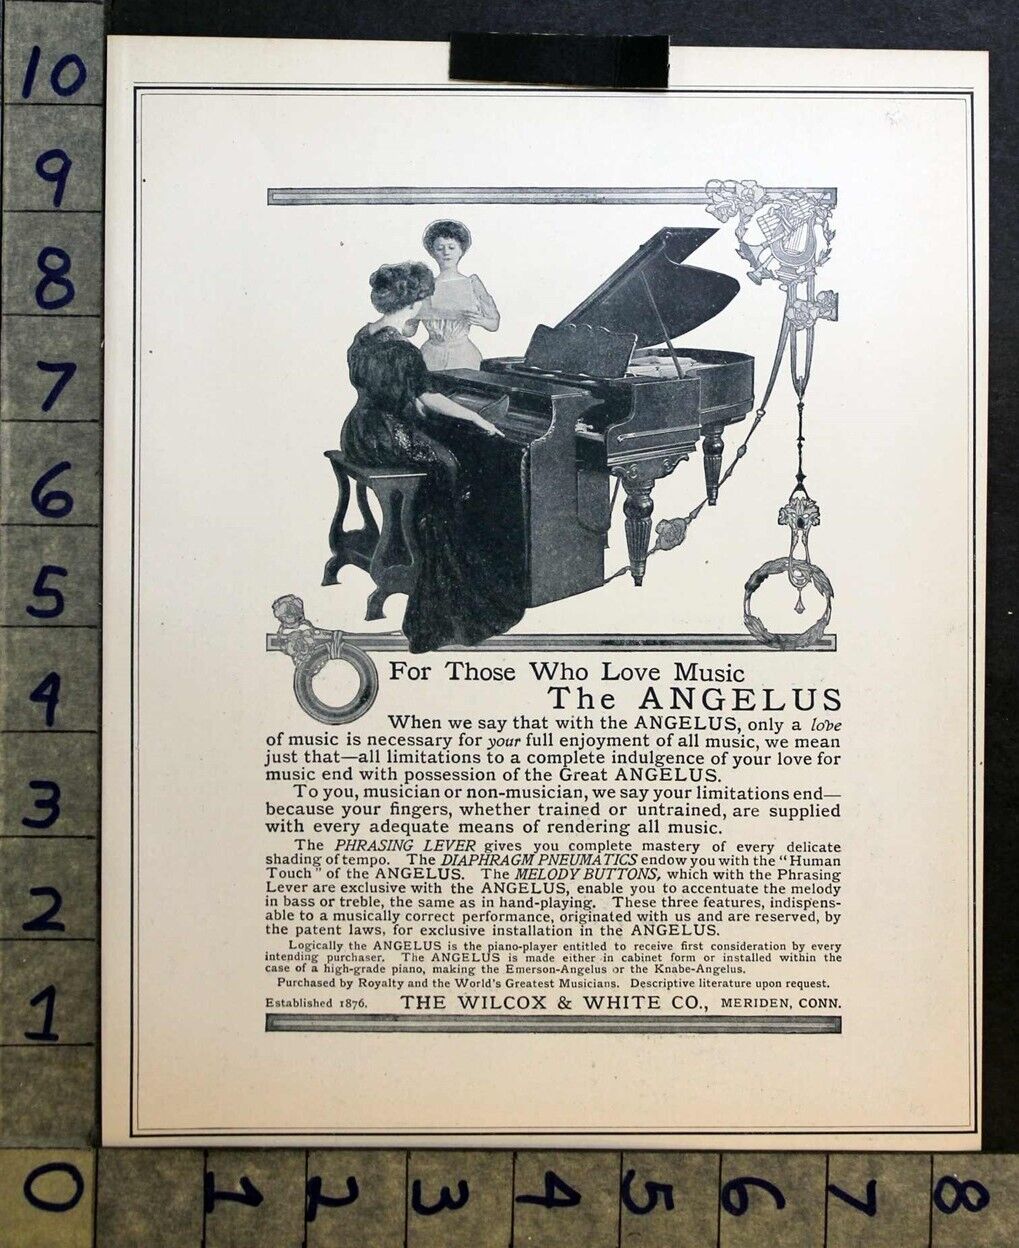 1906 PLAYER PIANO ANGELUS MUSIC INSTRUMENT WILCOX WHITE MERIDEN SING AD FC4635 